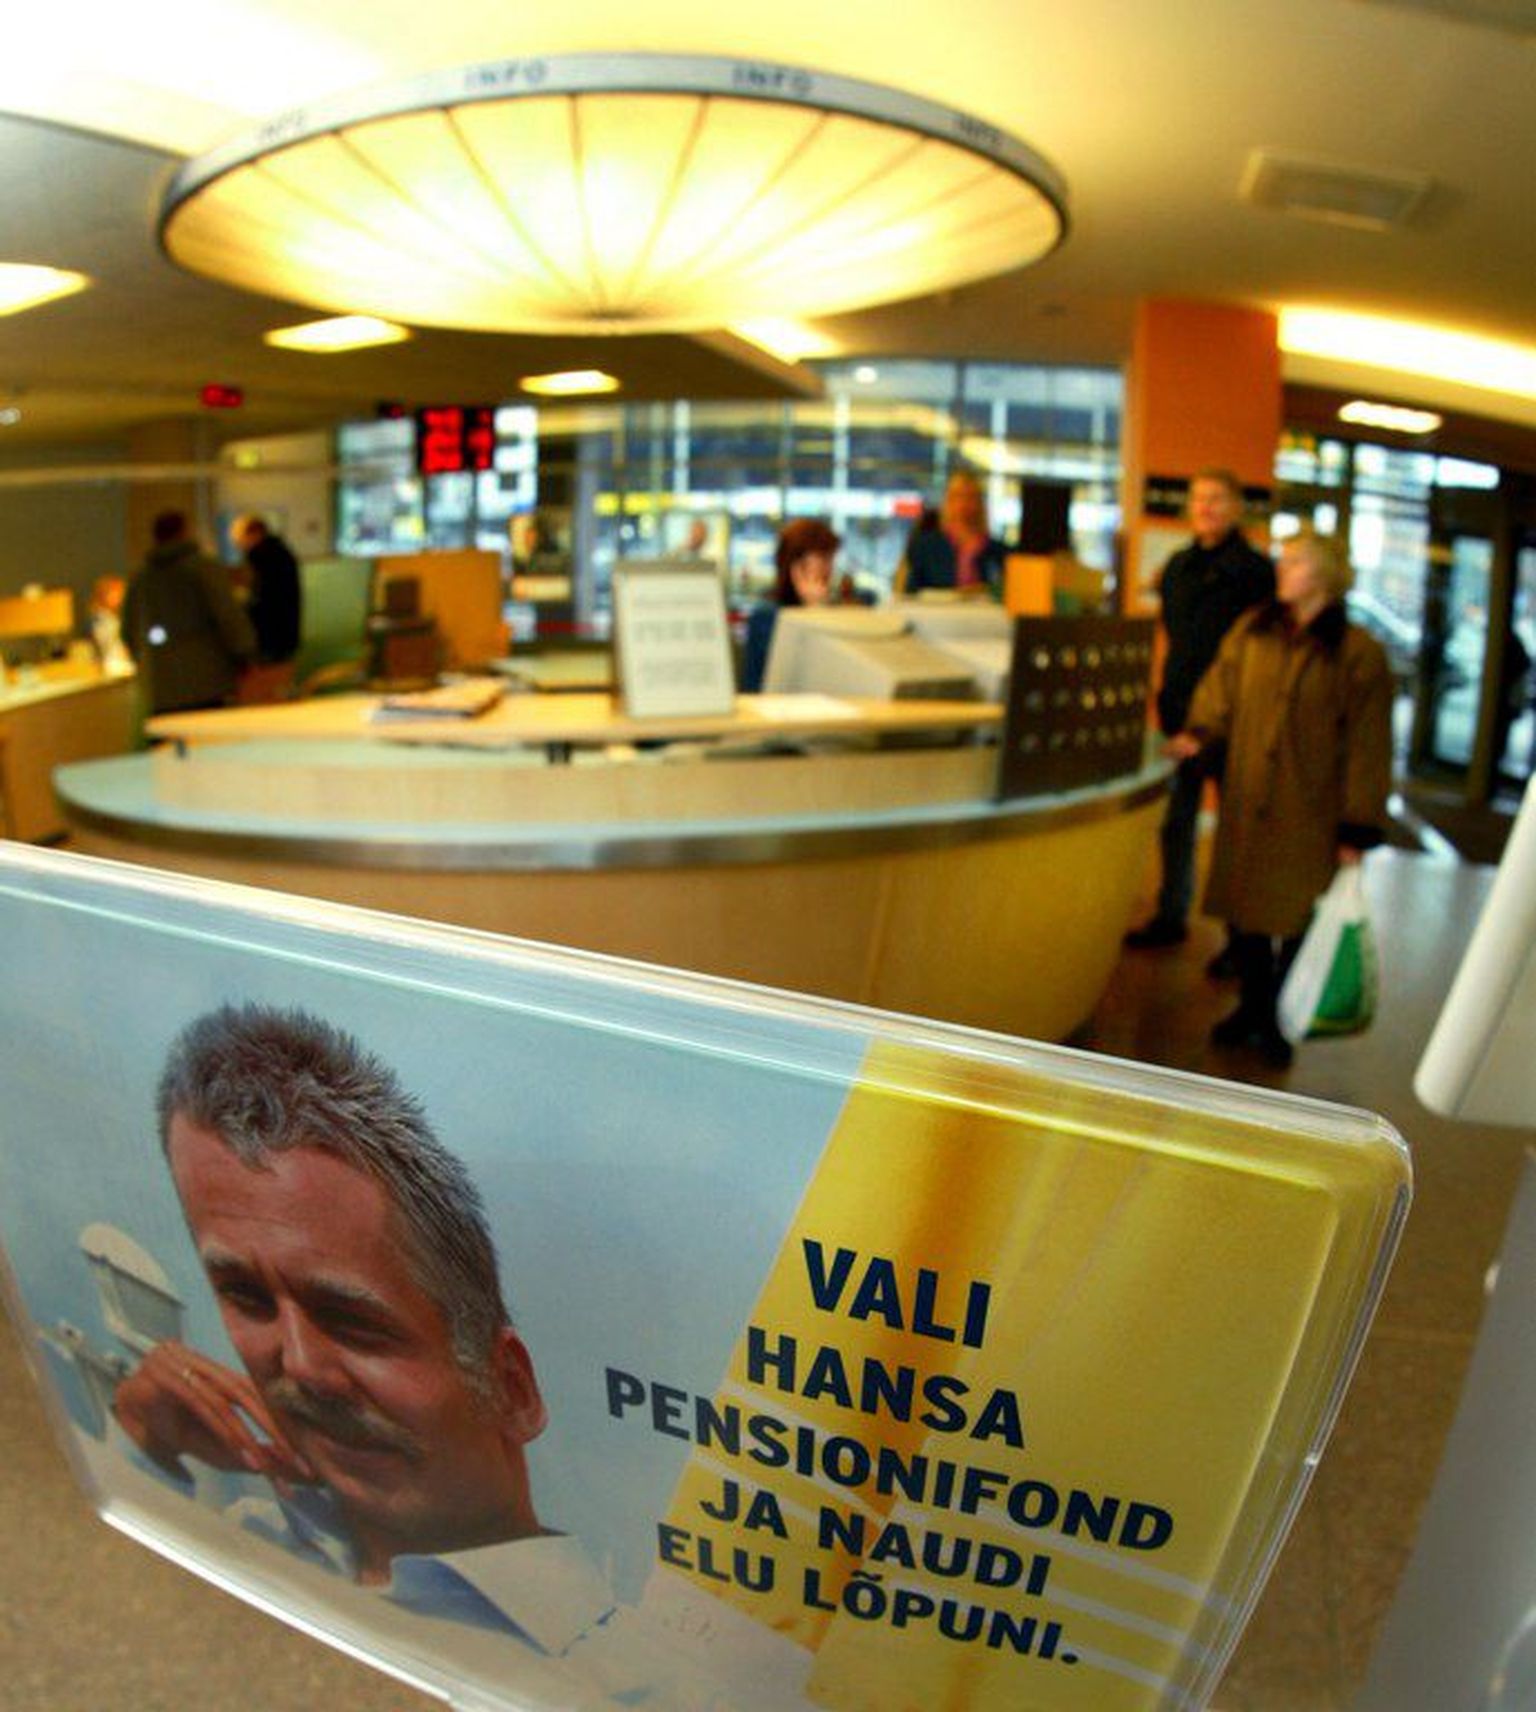 Hansapanga pensionifondi reklaam aastast 2003. .